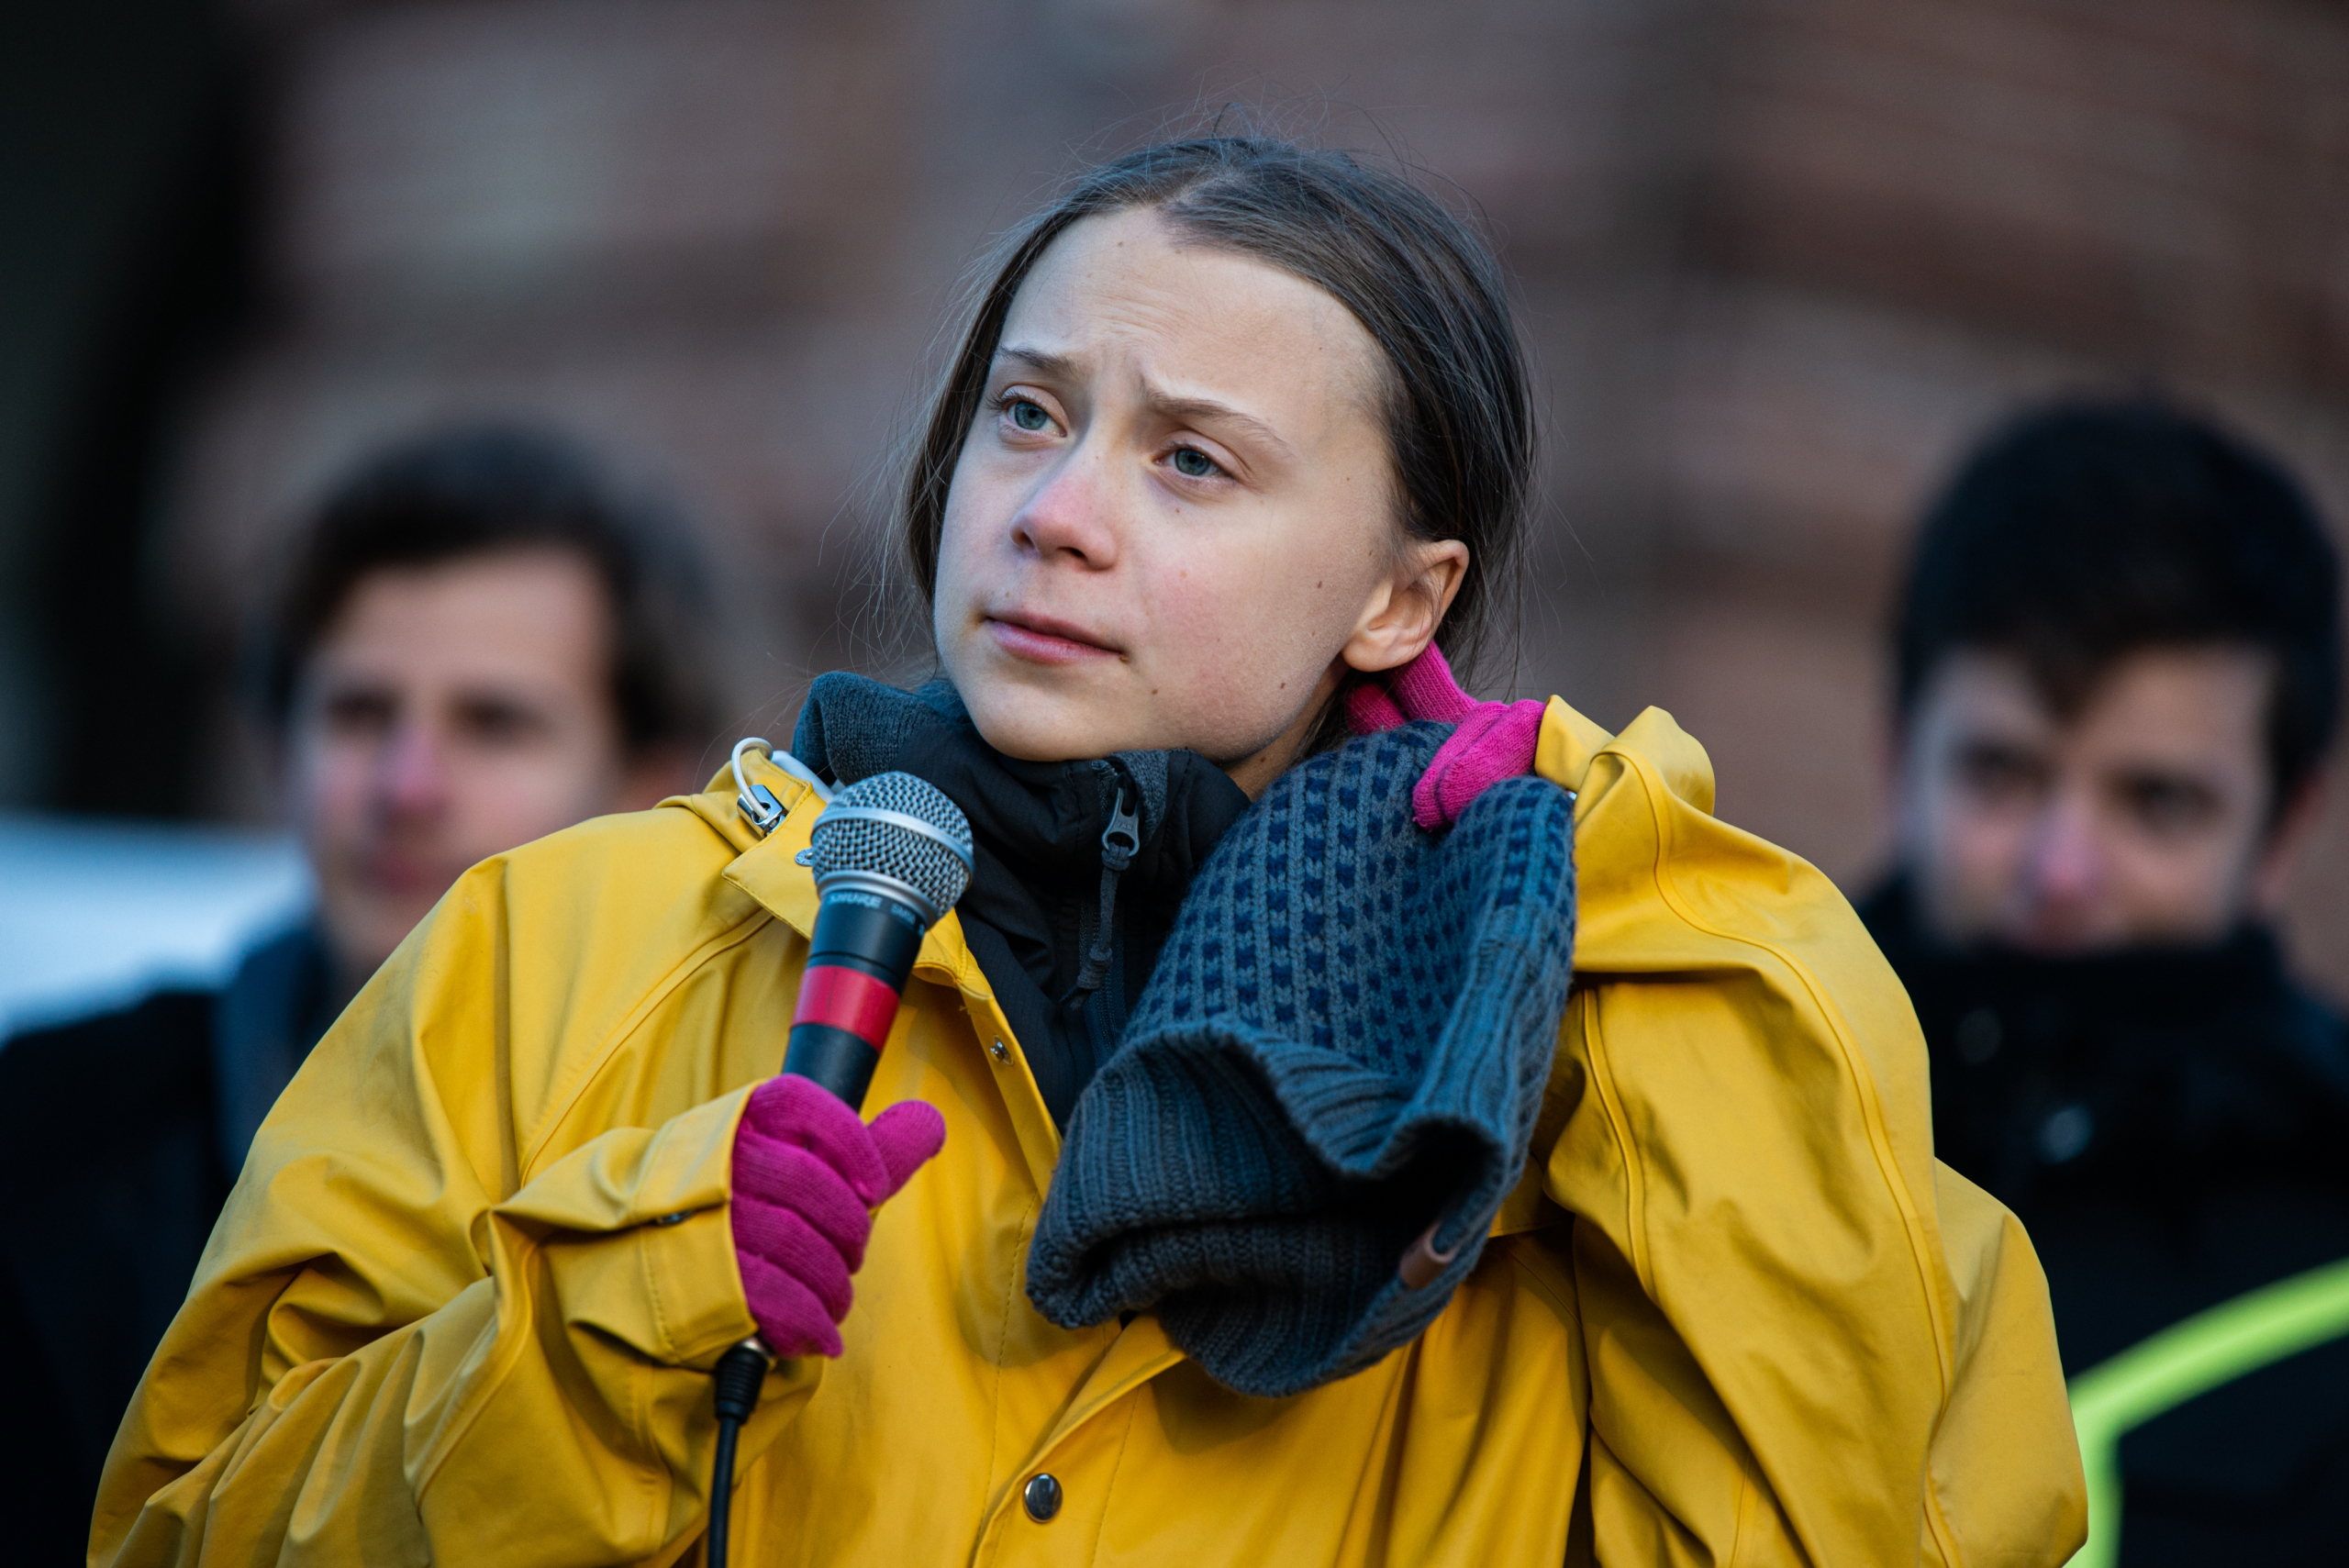 Aktivistkinja Greta Tunberg povlači se sa Edinburškog Sajma knjiga zbog "zelenog pranja"